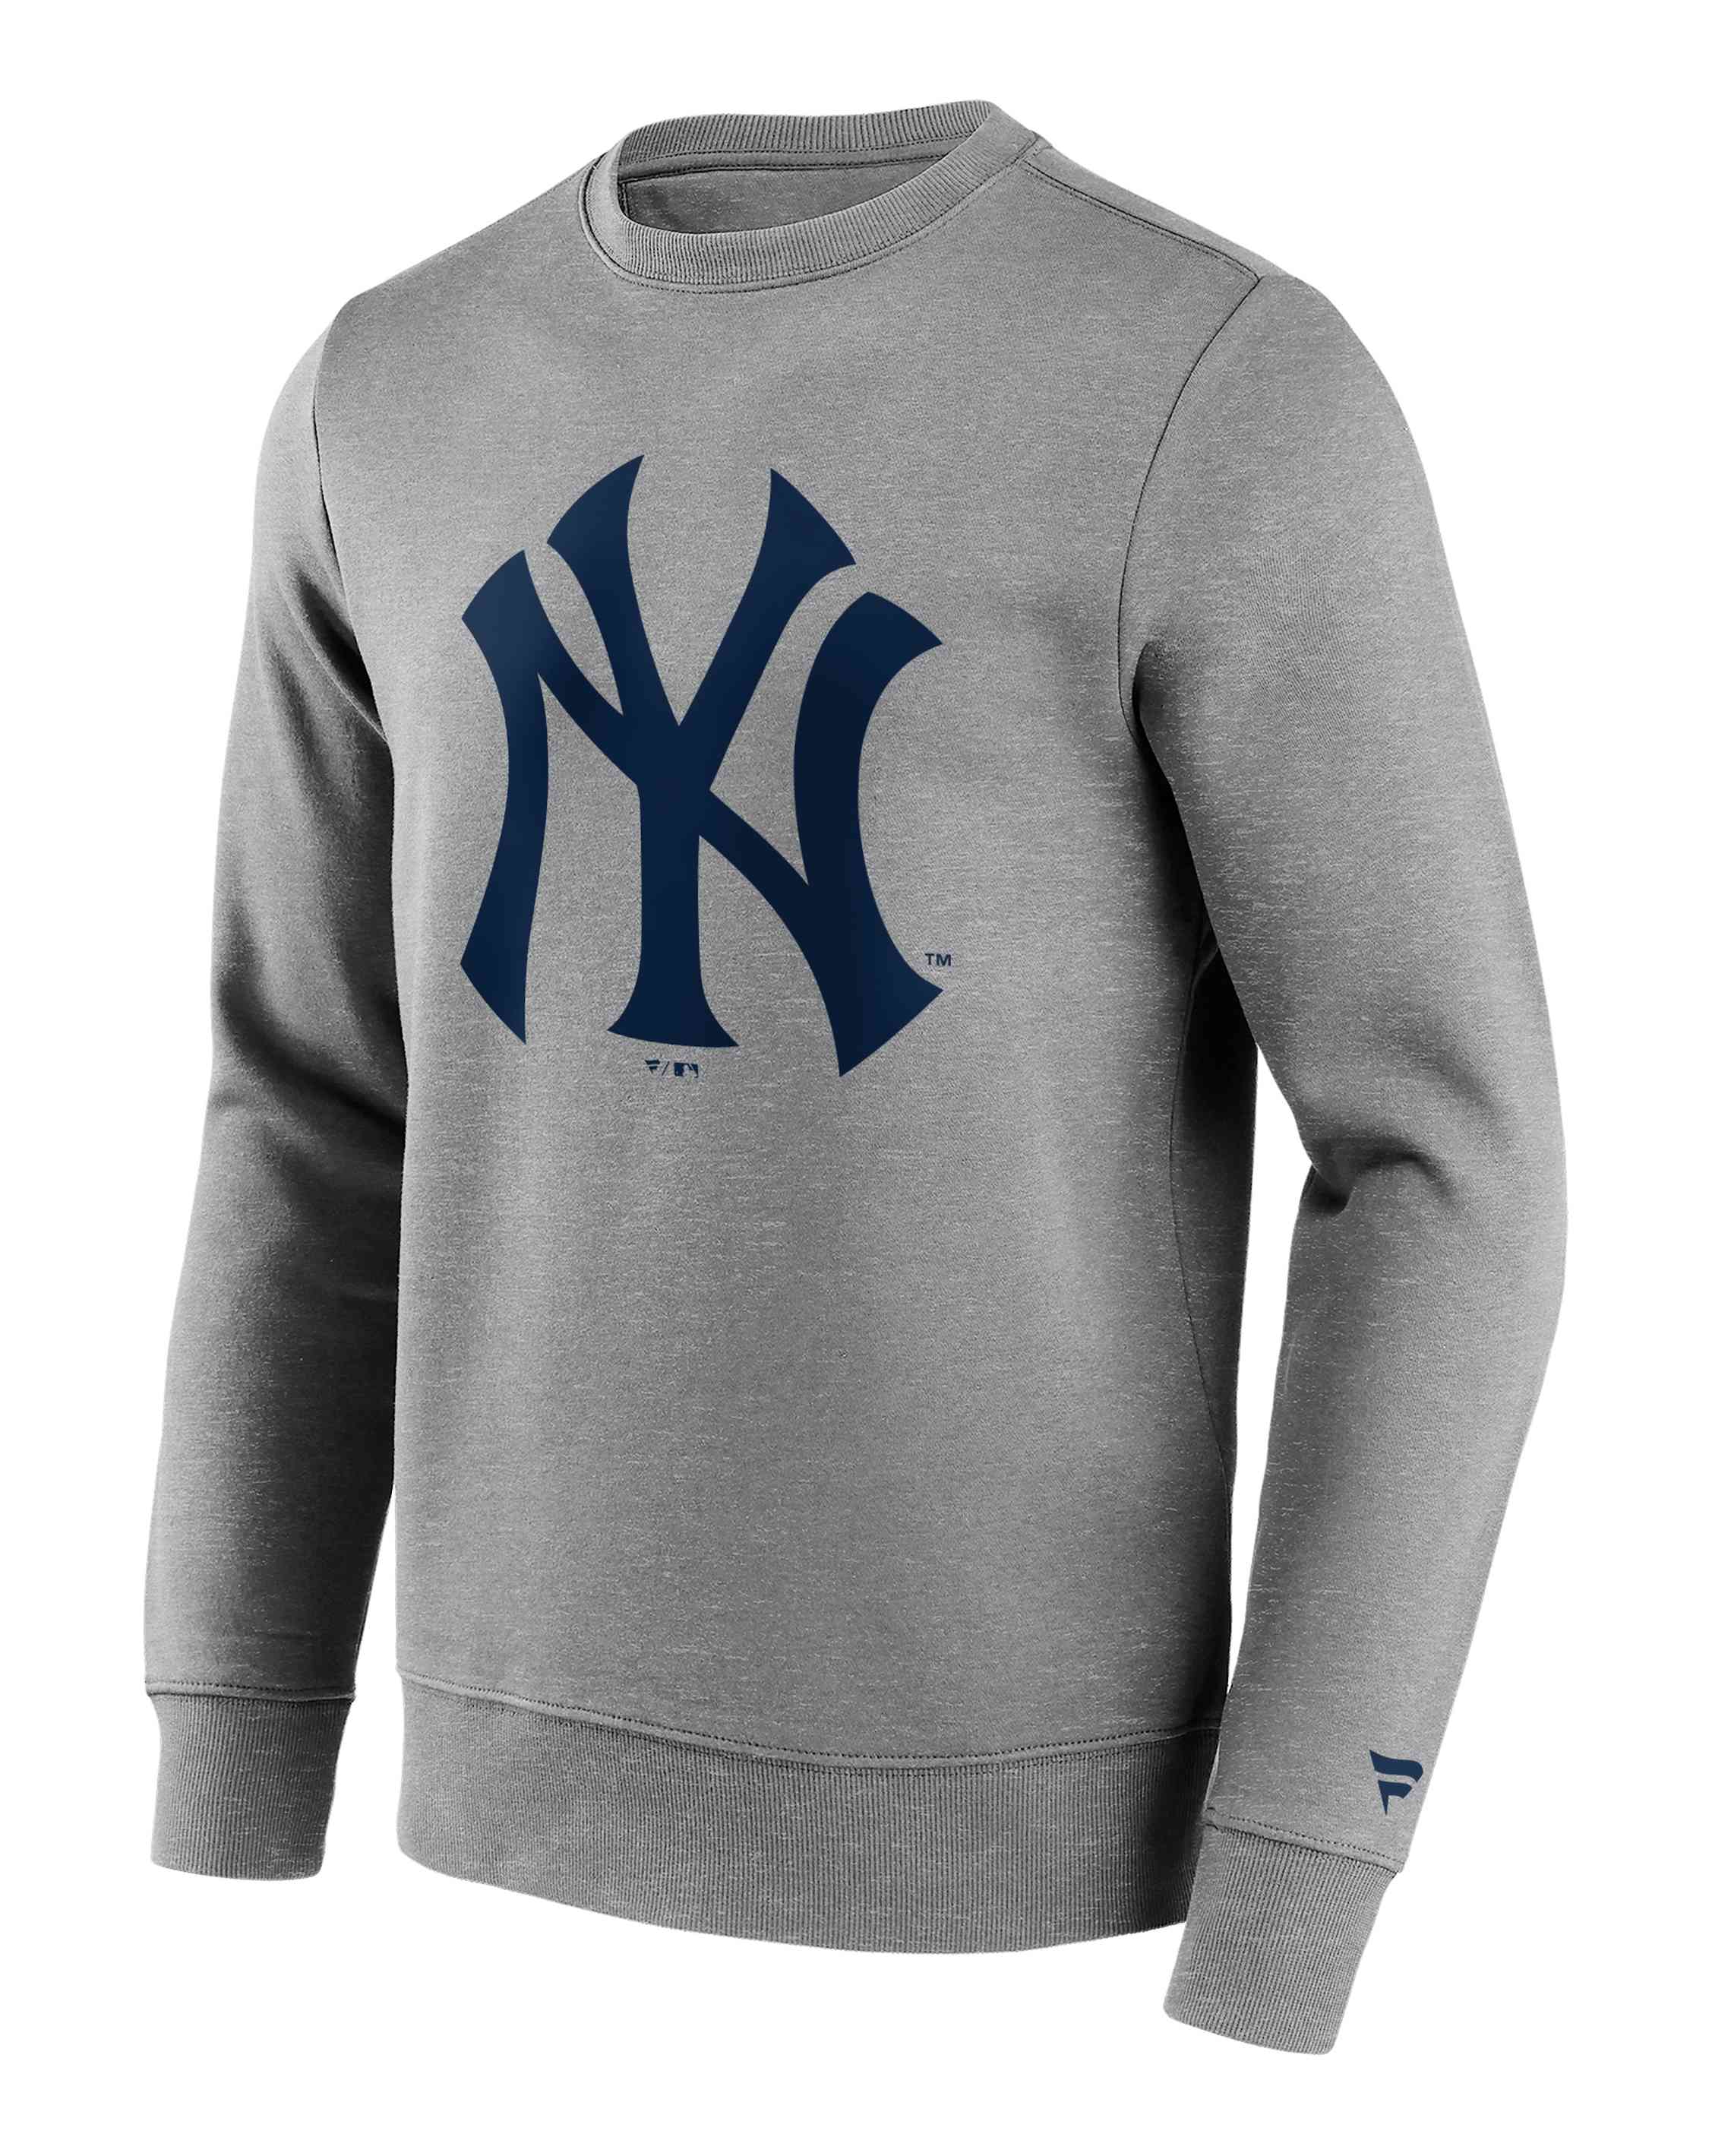 Fanatics - MLB New York Yankees Primary Logo Graphic Crew Sweatshirt